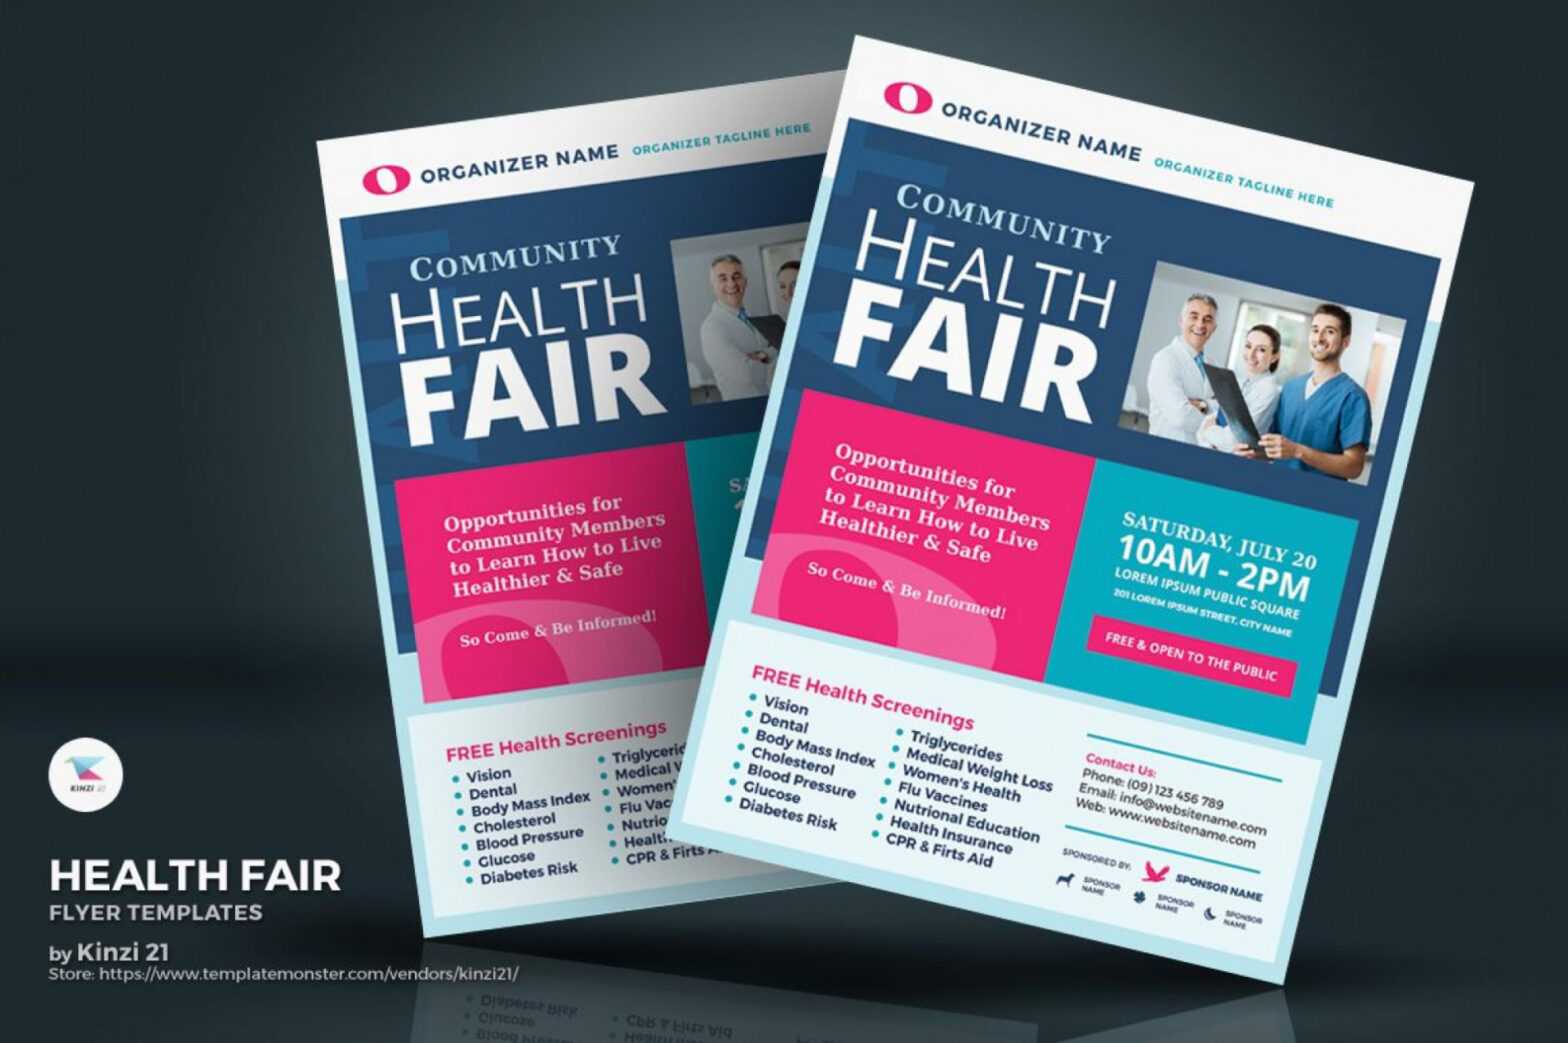 Health Fair Flyer Template Free ~ Addictionary throughout Health Fair Flyer Templates Free